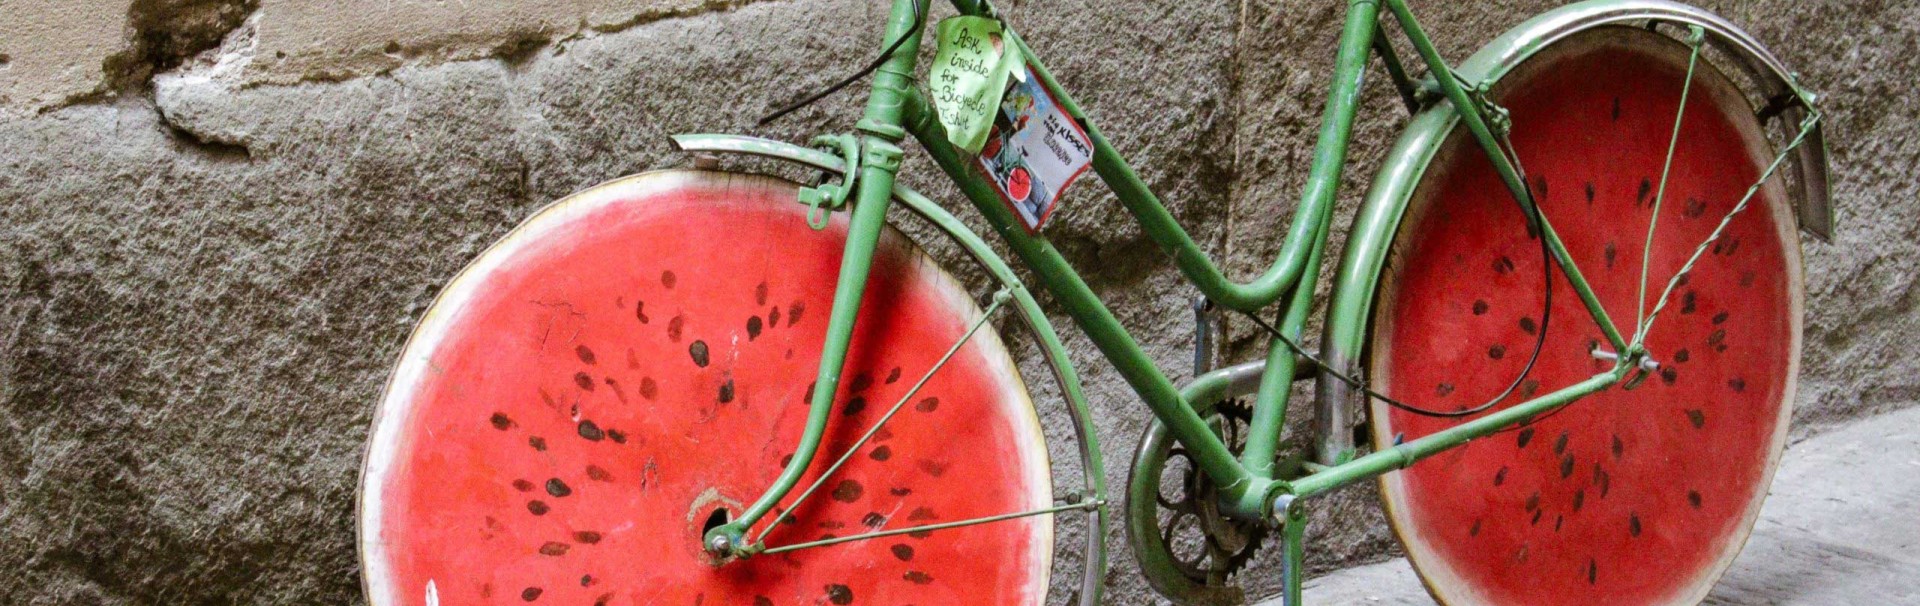 Ein grünes Fahrrad lehnt an einer Wand. Die Räder sehen aus wie eine angeschnittene Wassermelone.